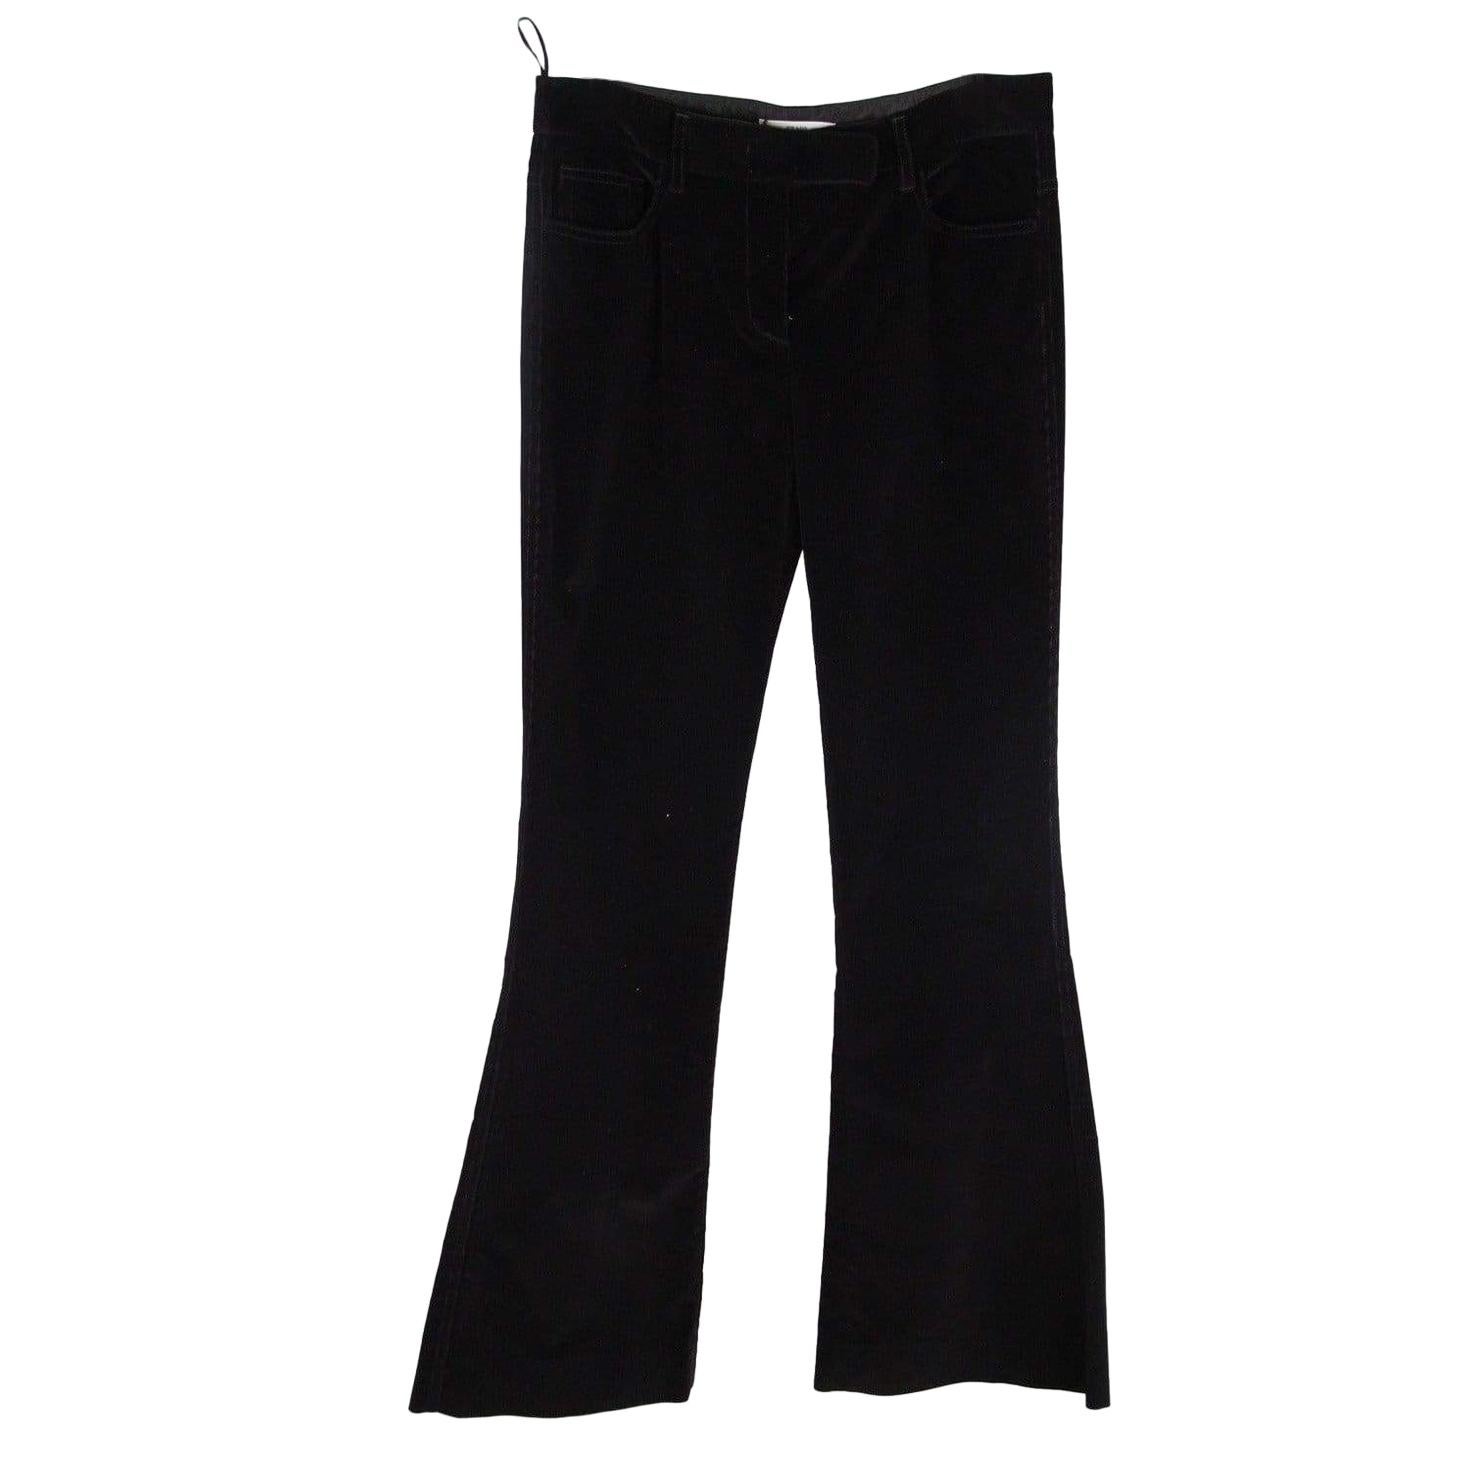 PRADA Black Corduroy 5 POCKET Style PANTS Trousers SIZE 40